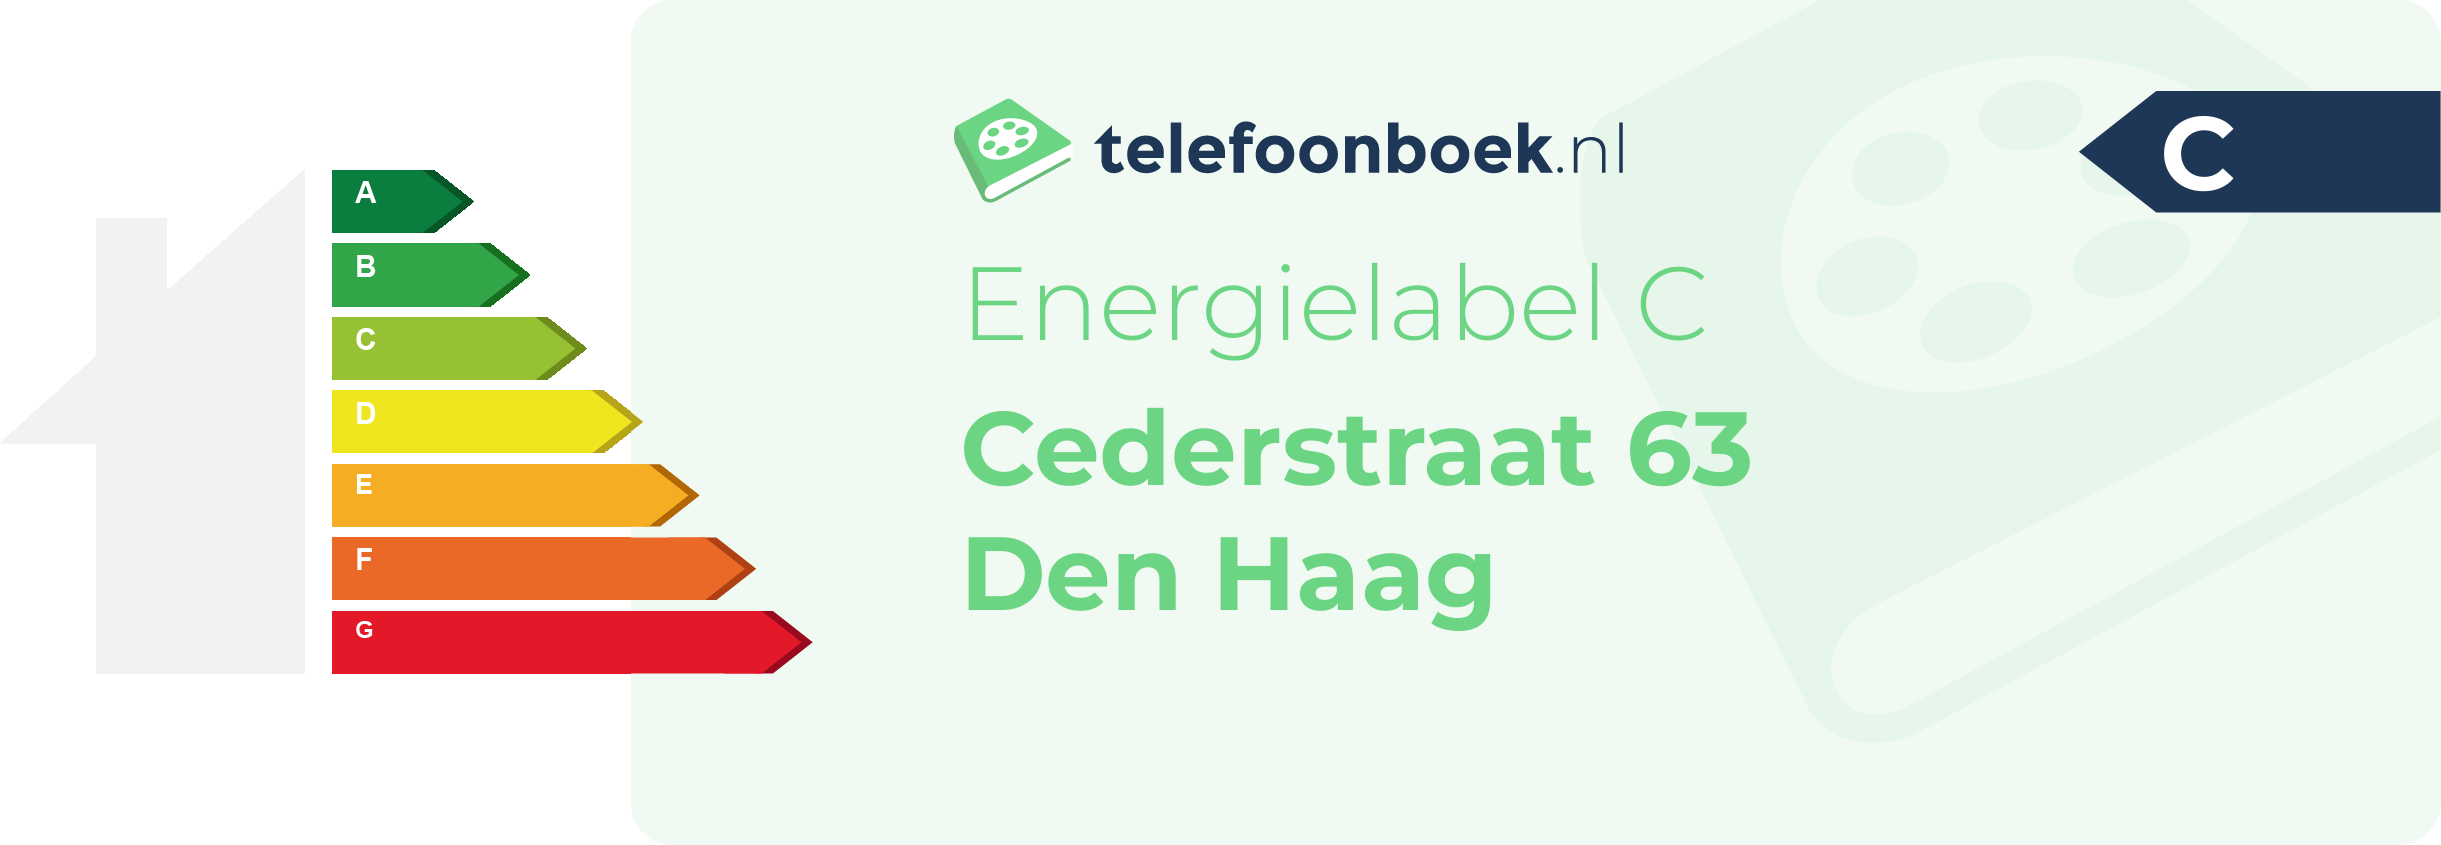 Energielabel Cederstraat 63 Den Haag